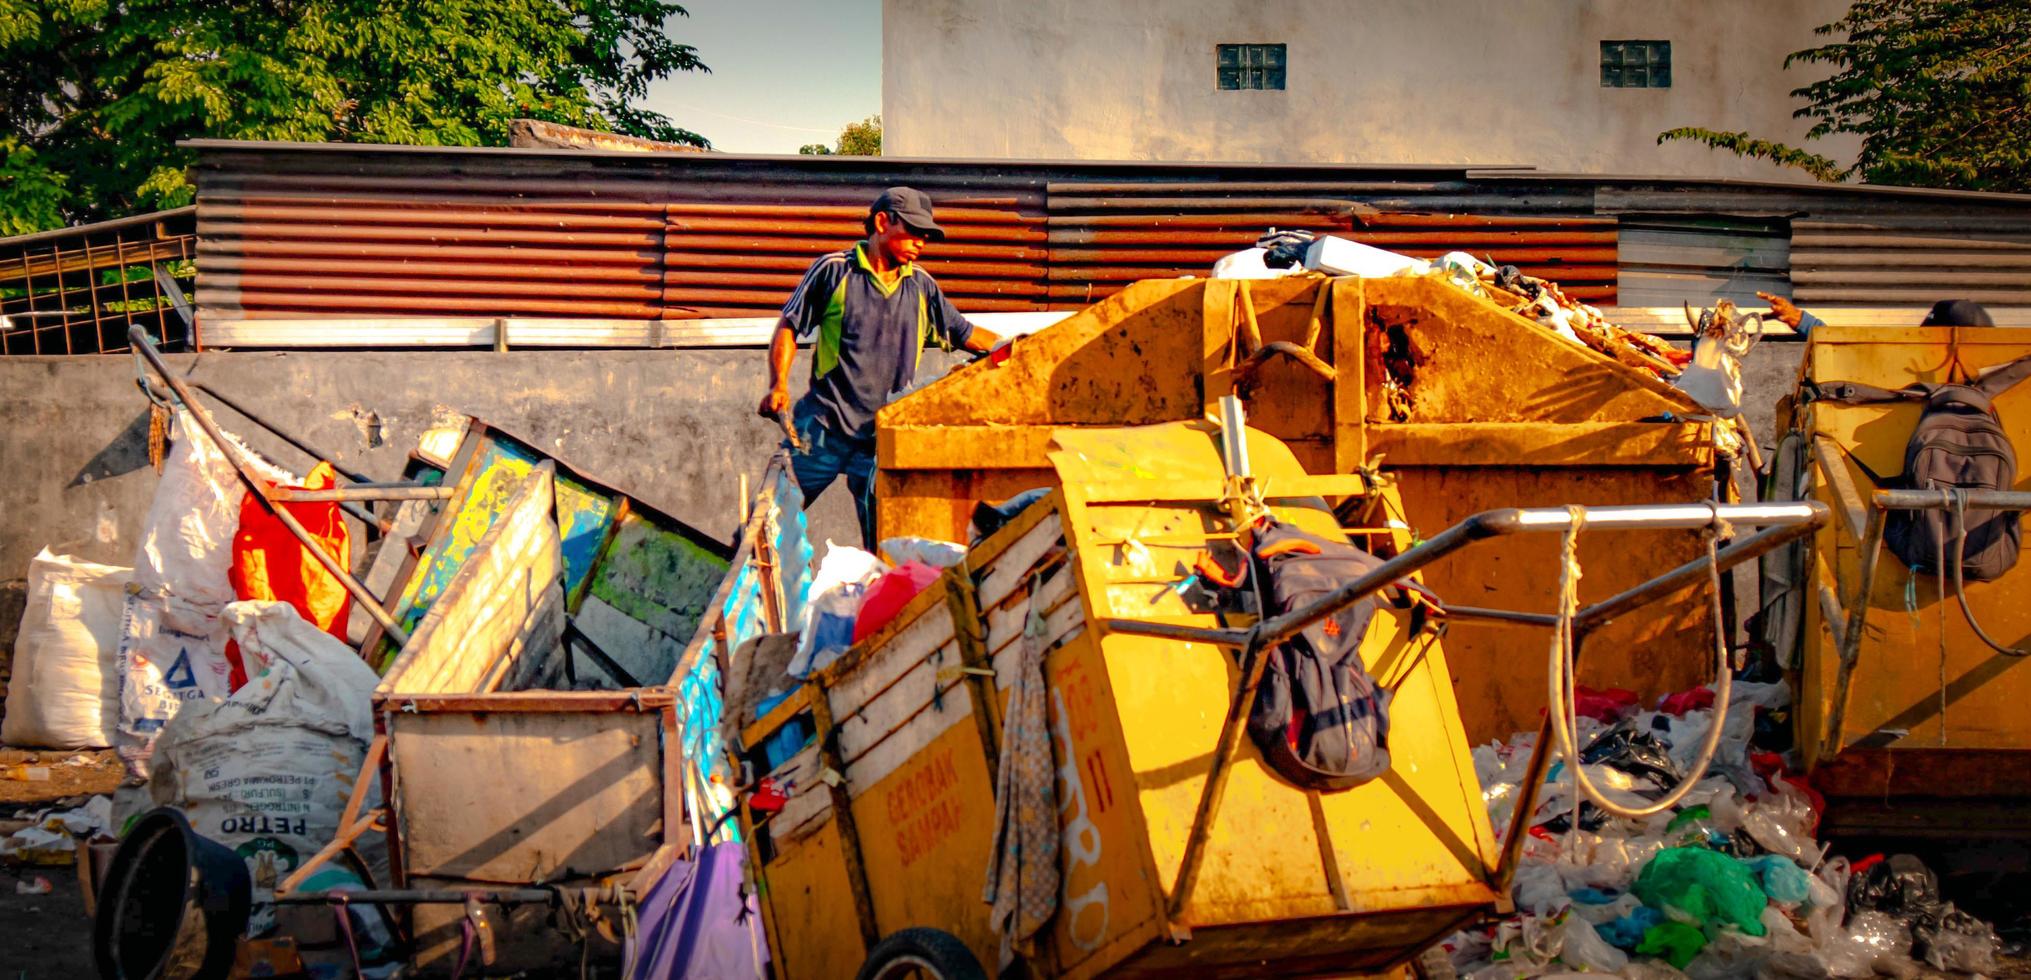 gresik, jawa timur, indonesia, 2022 - un basurero, conserje, carro de basura alrededor del complejo de viviendas foto